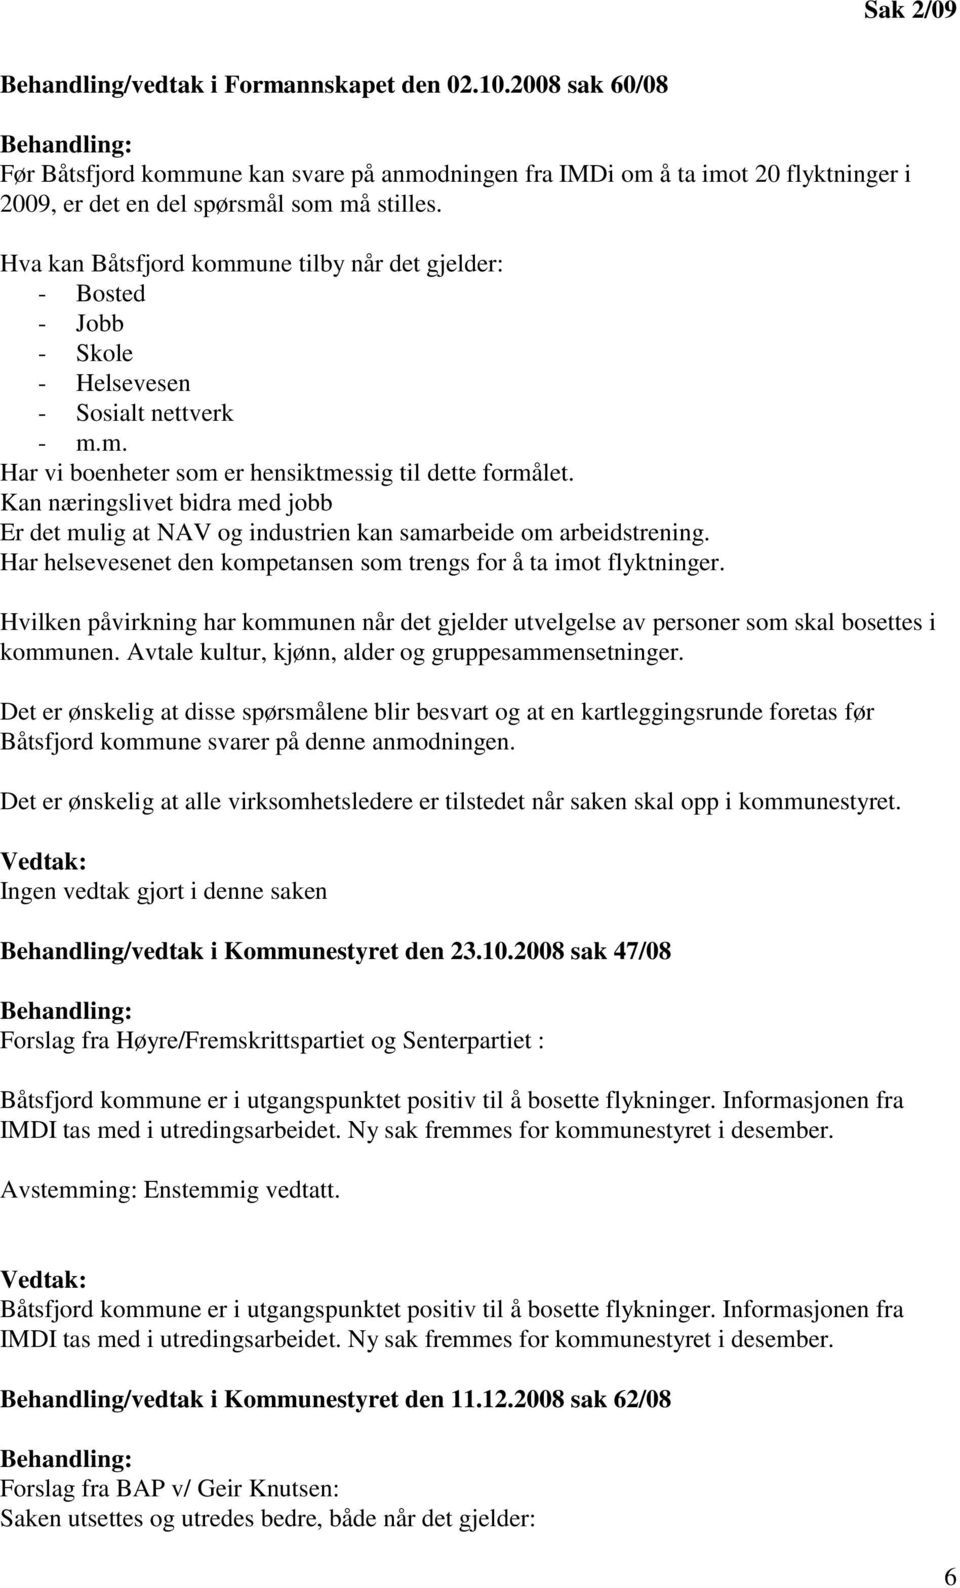 Hva kan Båtsfjord kommune tilby når det gjelder: - Bosted - Jobb - Skole - Helsevesen - Sosialt nettverk - m.m. Har vi boenheter som er hensiktmessig til dette formålet.